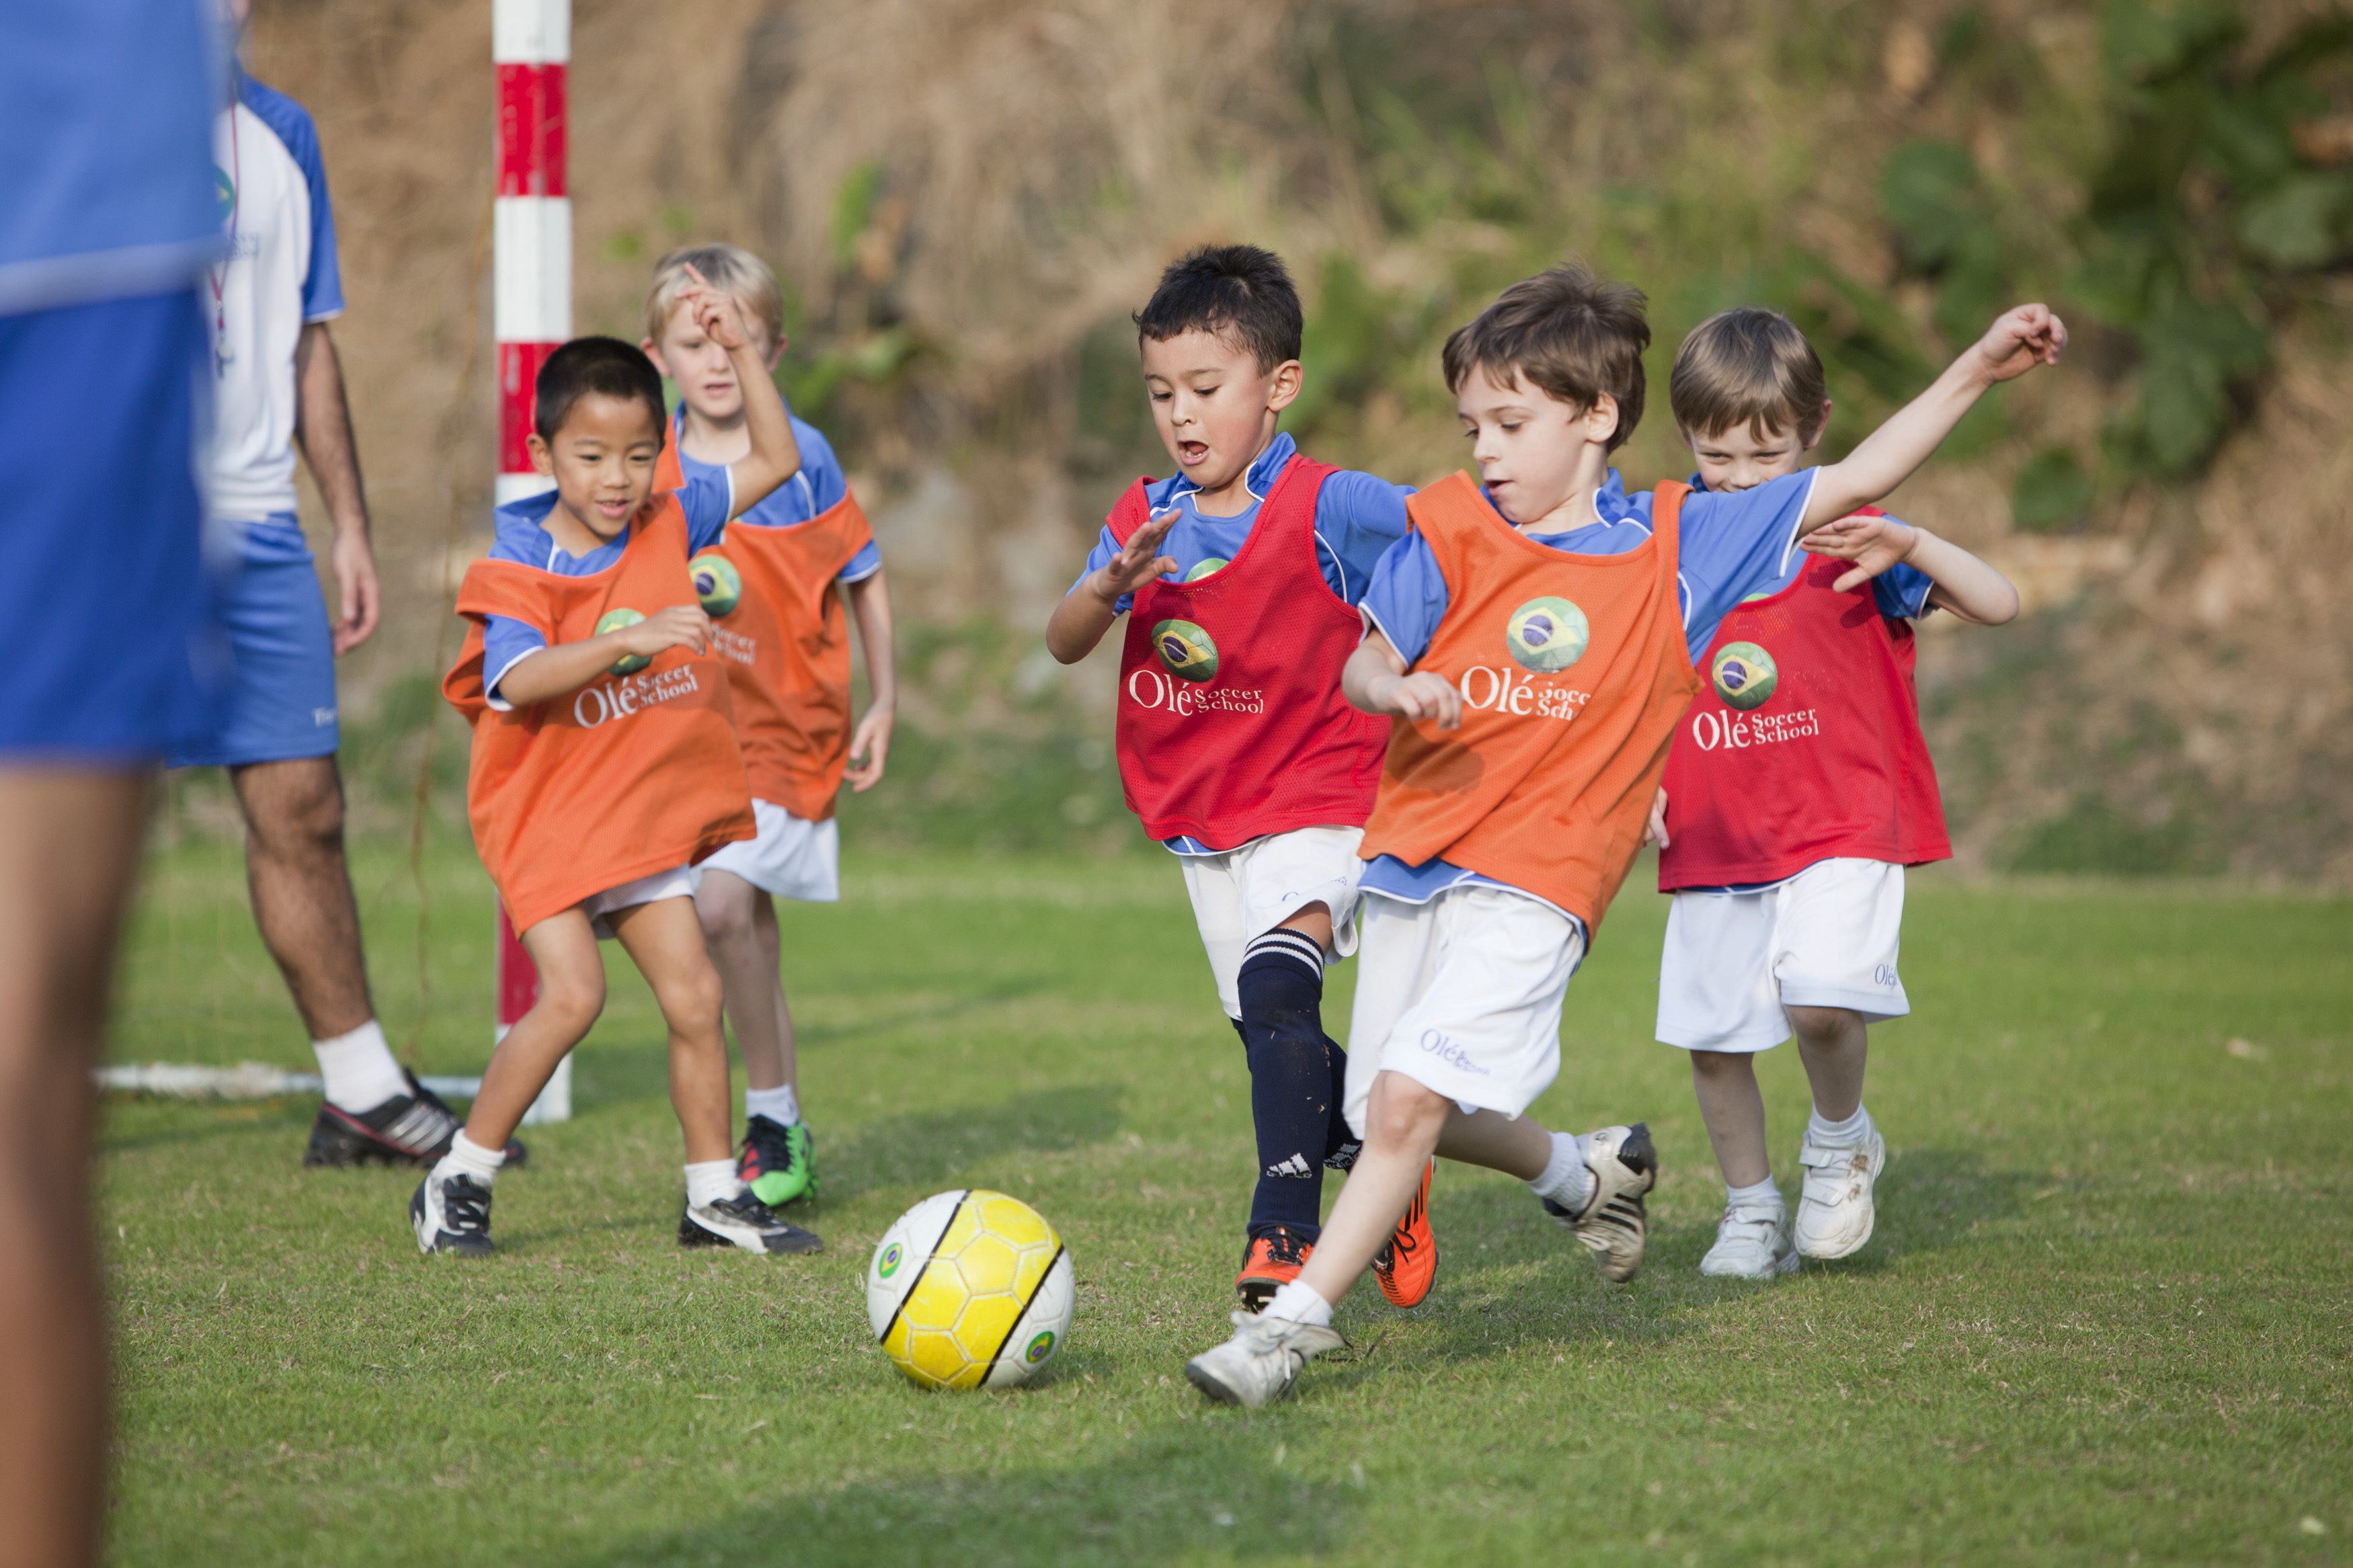 Тема фотографии игра в футбол. Футбол дети. Дети футболисты. Детская секция футбола. Дети играющие в футбол.